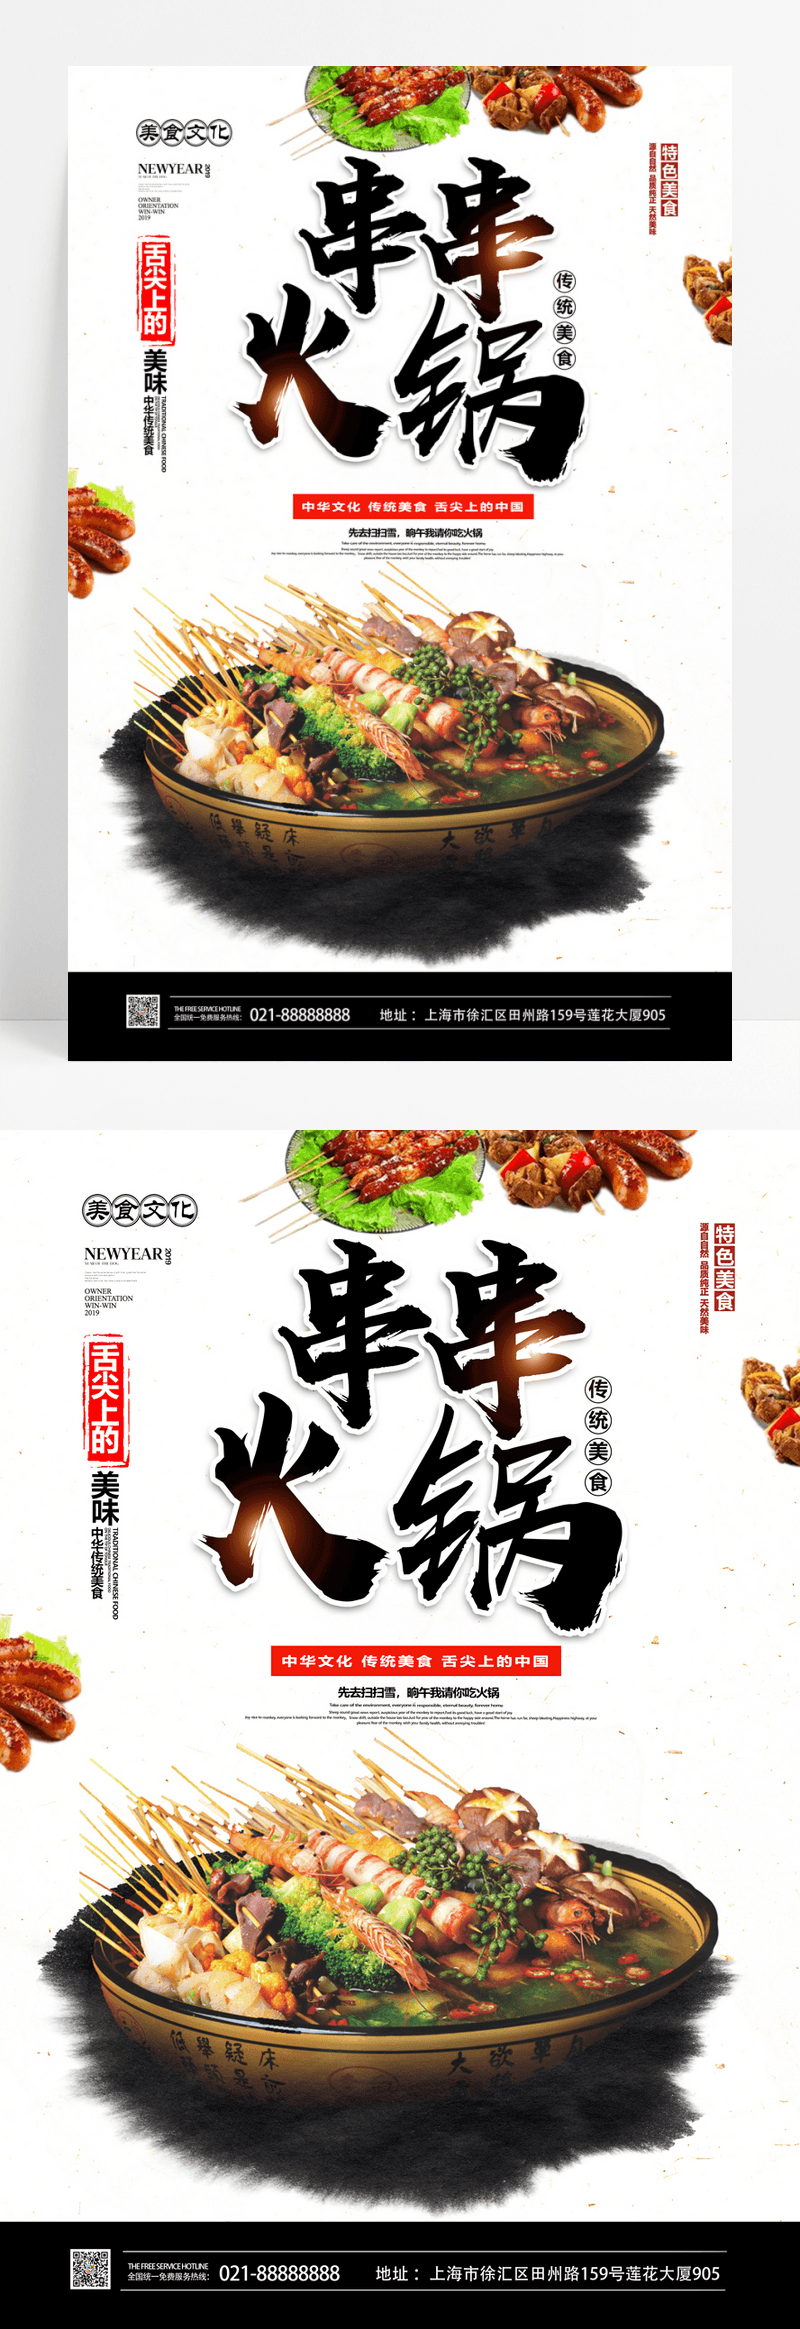  极简中国风串串火锅美食海报